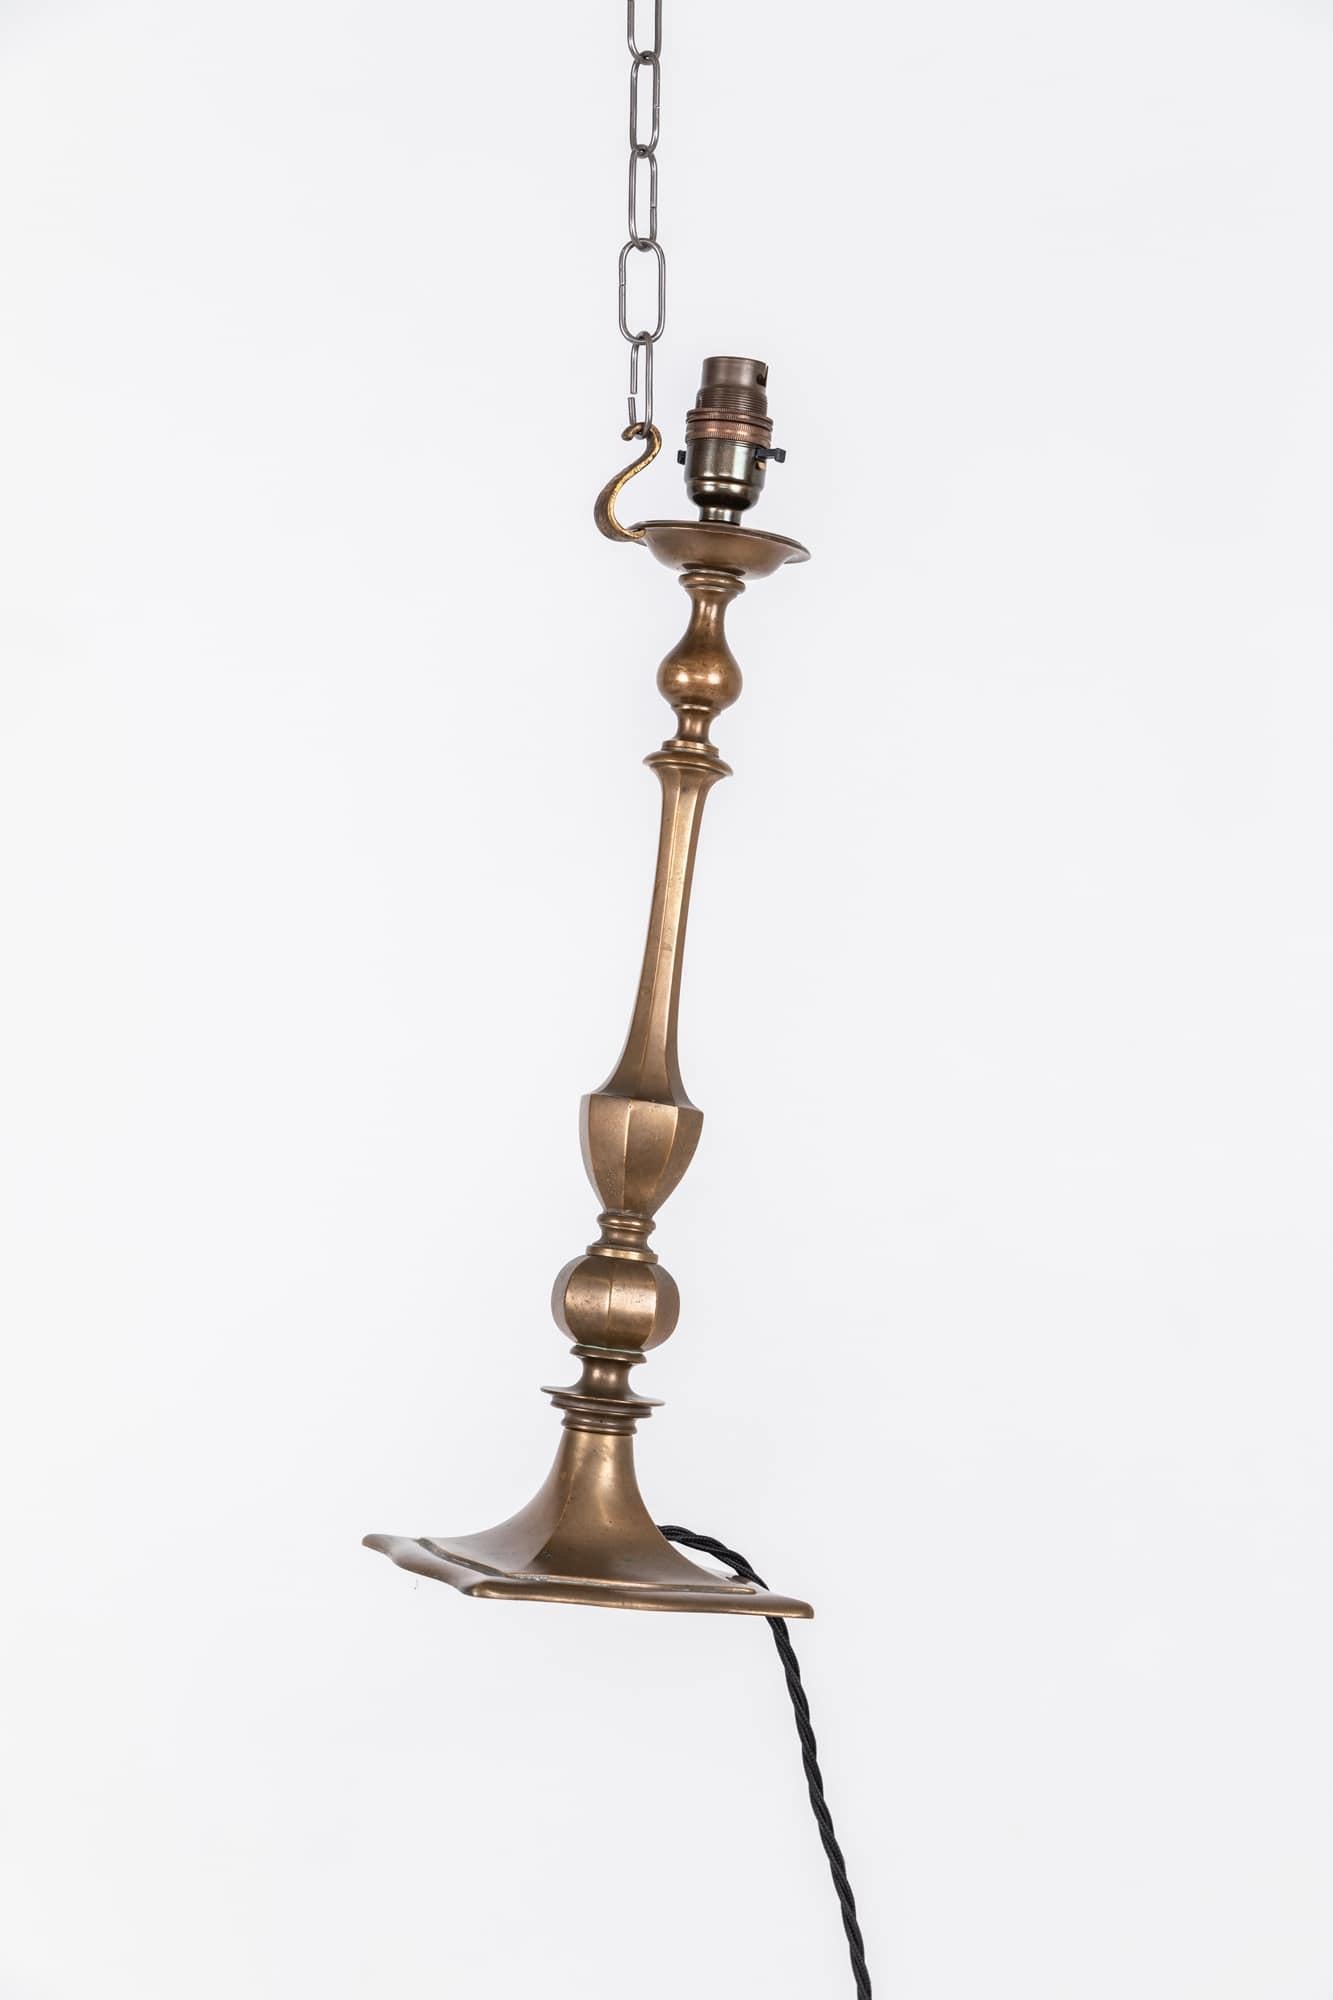 Très belle lampe de table en laiton de l'époque édouardienne. C.1910.

En laiton lourd de haute qualité, avec une belle patine d'usage.

Recâblé avec 2 m de câble torsadé noir et une fiche BS à 3 broches.
